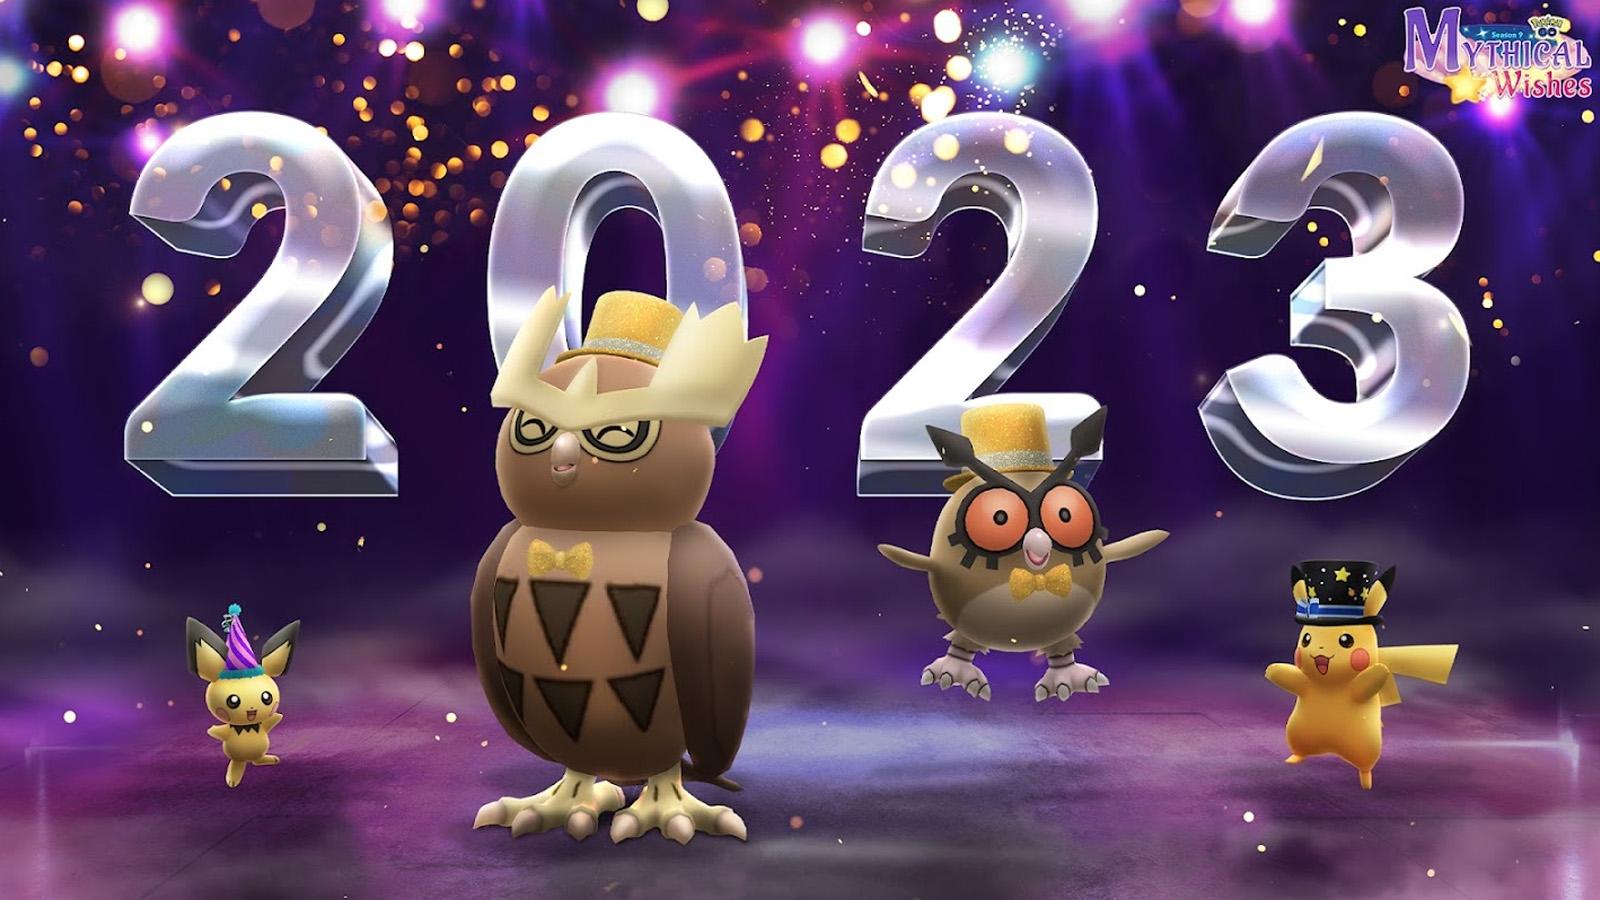 Calendrier des Raids Pokémon Go, Décembre 2023